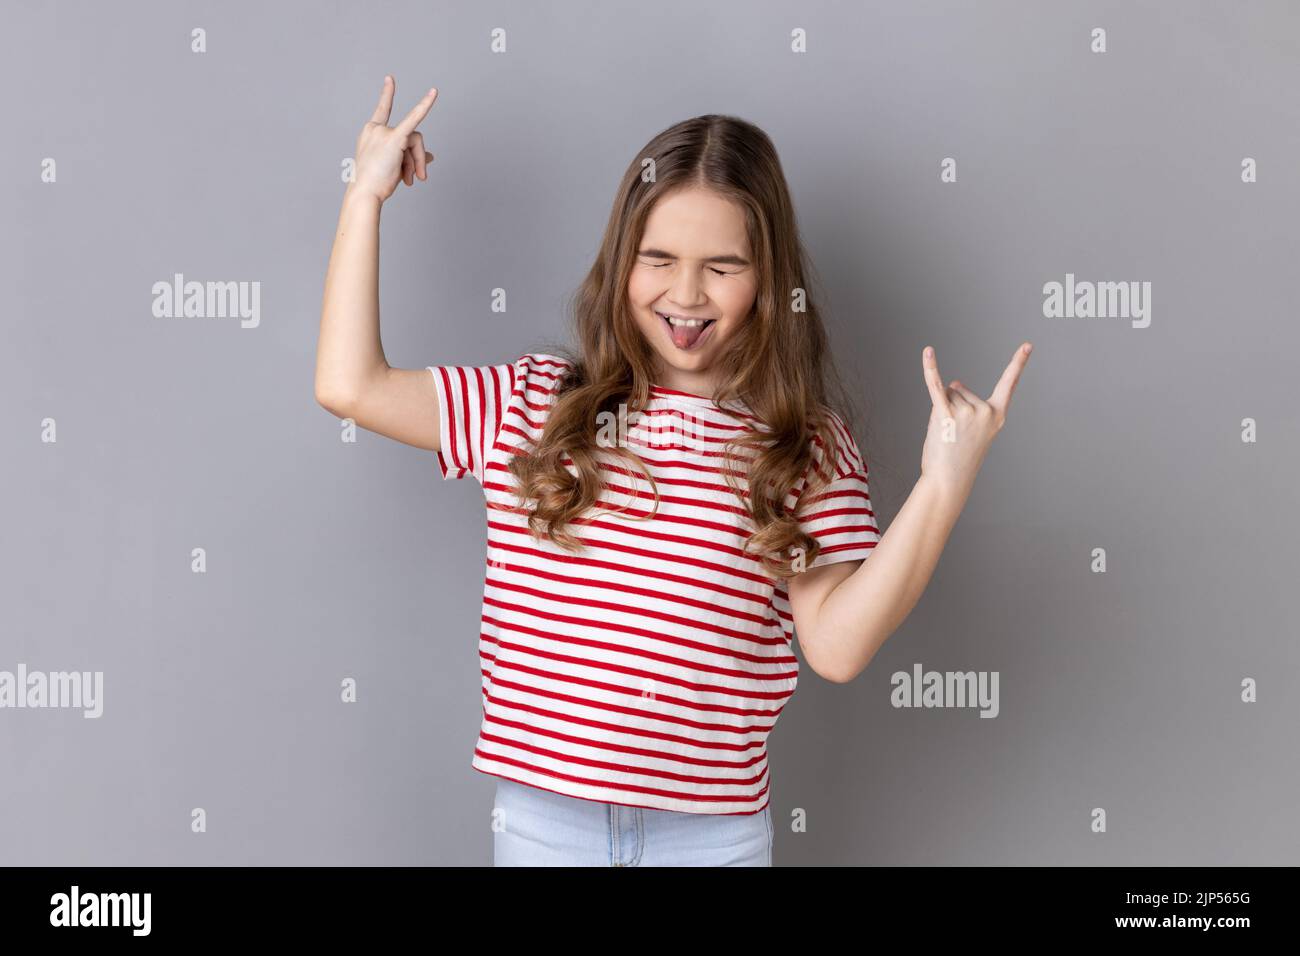 Portrait d'une petite fille portant un T-shirt rayé montrant rock and roll geste Heavy Metal signe, aime la musique préférée, a du plaisir, exclame de joie. Prise de vue en studio isolée sur fond gris. Banque D'Images